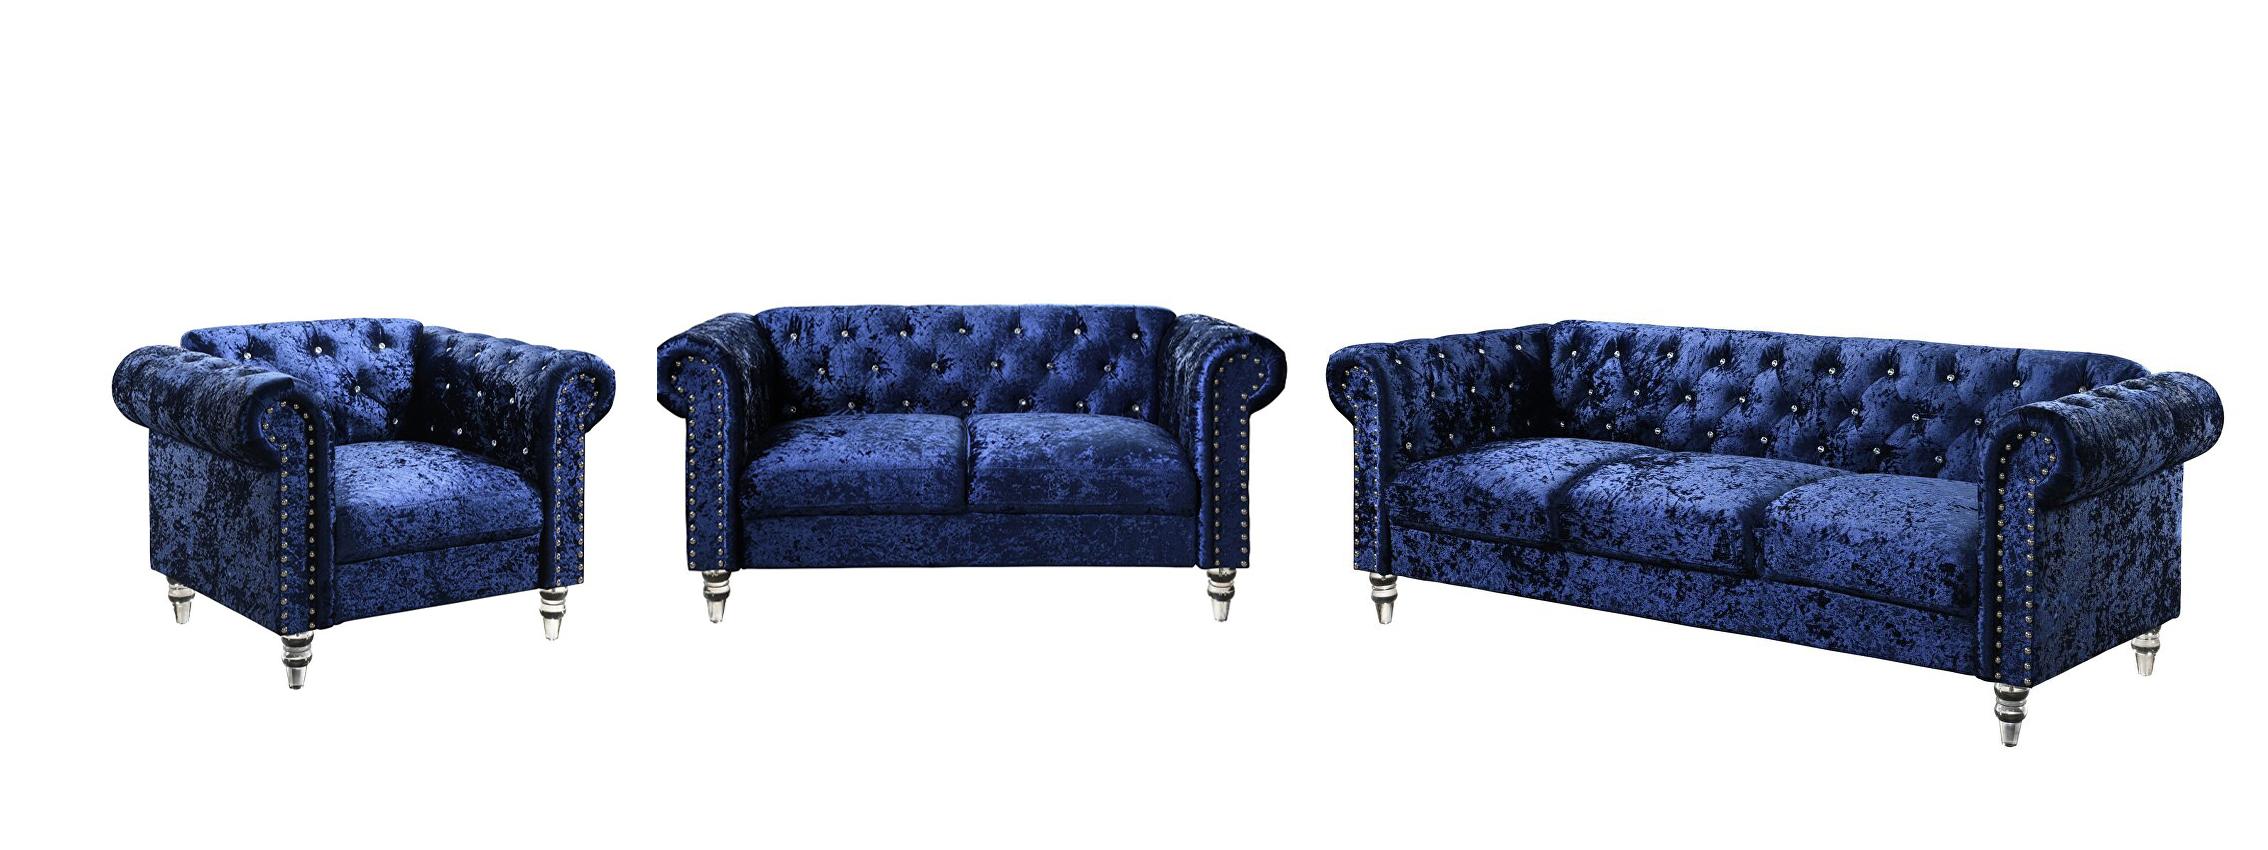 Transitional Sofa Loveseat and Chair Set U9550 U9550-BLUE VELVET-S/LS/CH in Blue Velvet